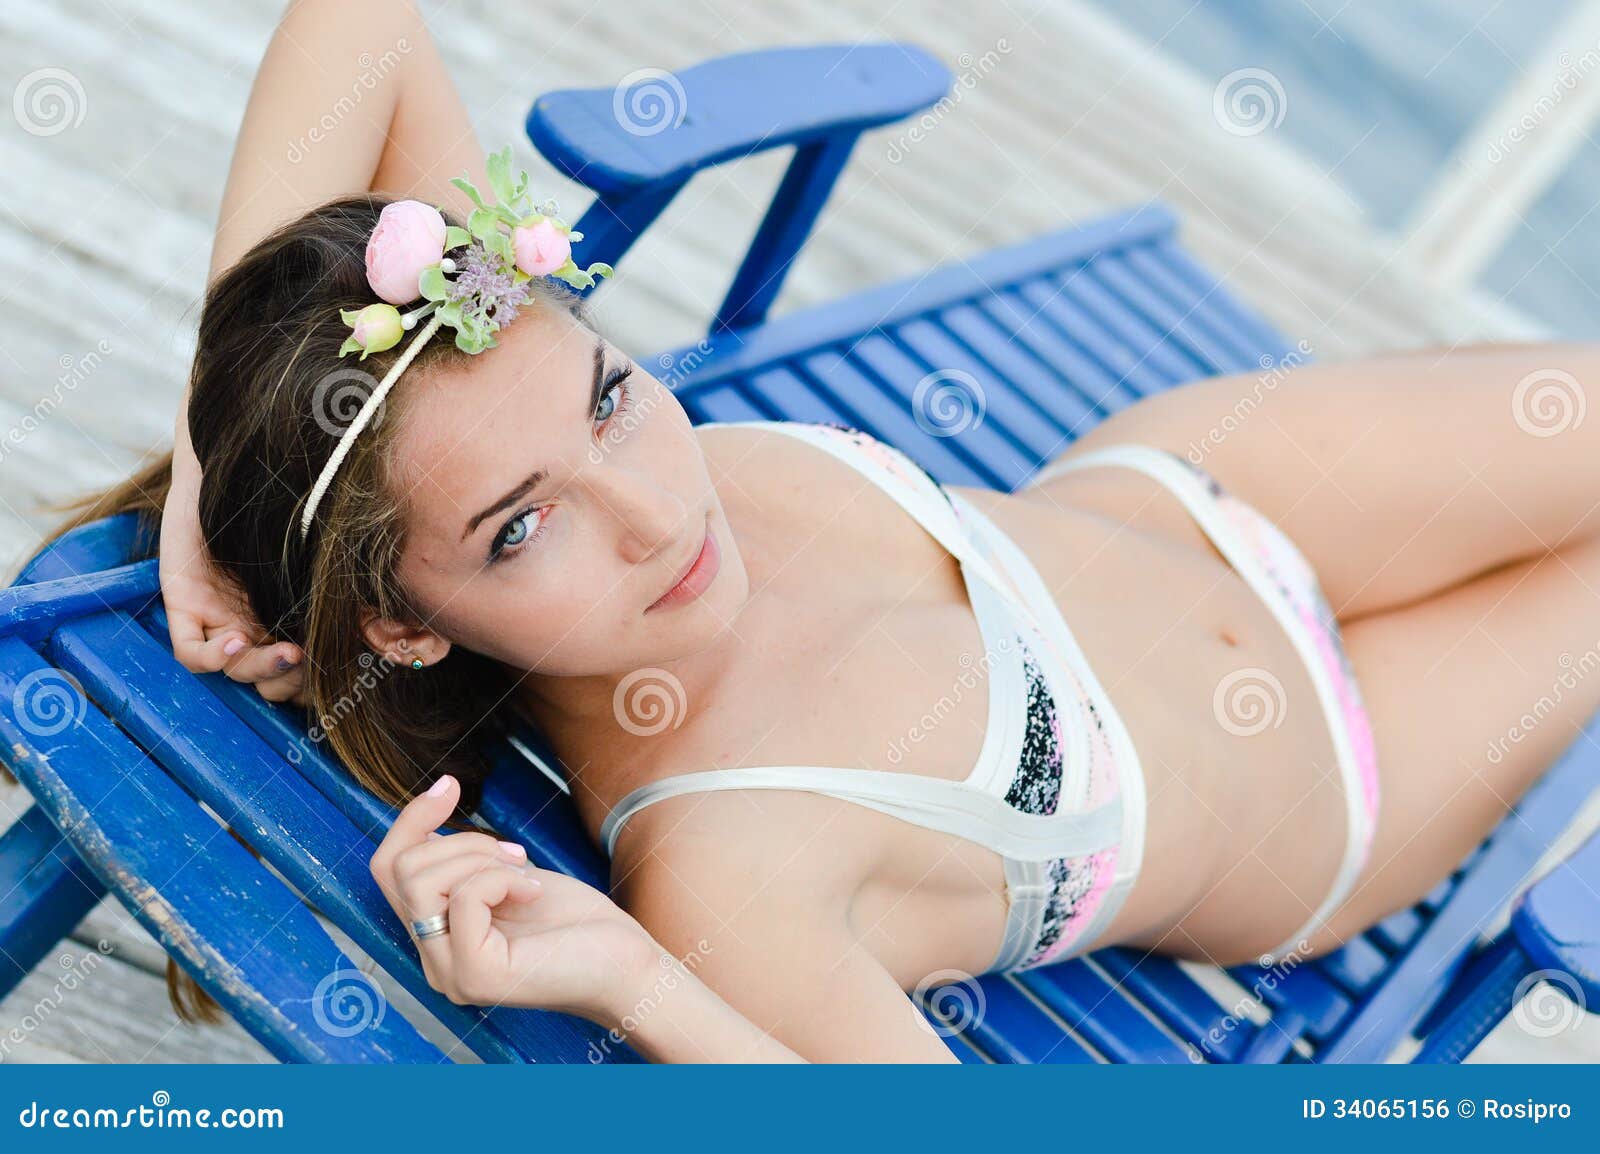 Young Woman in Bikini Enjoying Sunny Day on Sun Lounge Stock Photo